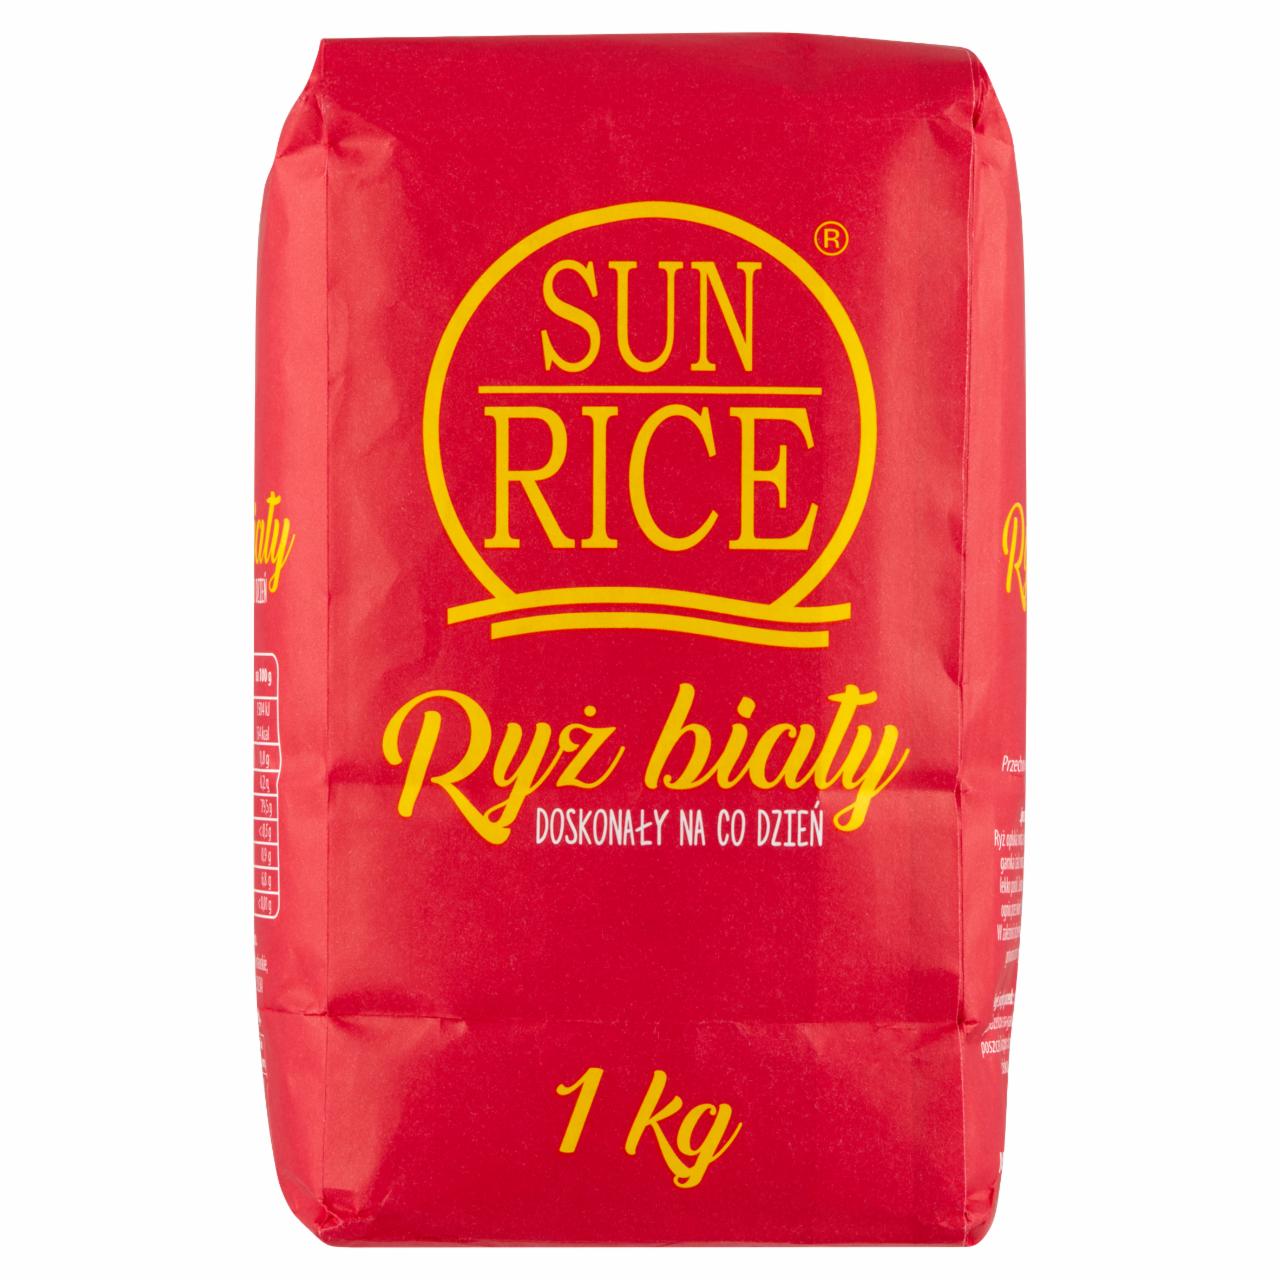 Zdjęcia - Sun Rice Ryż biały 1 kg